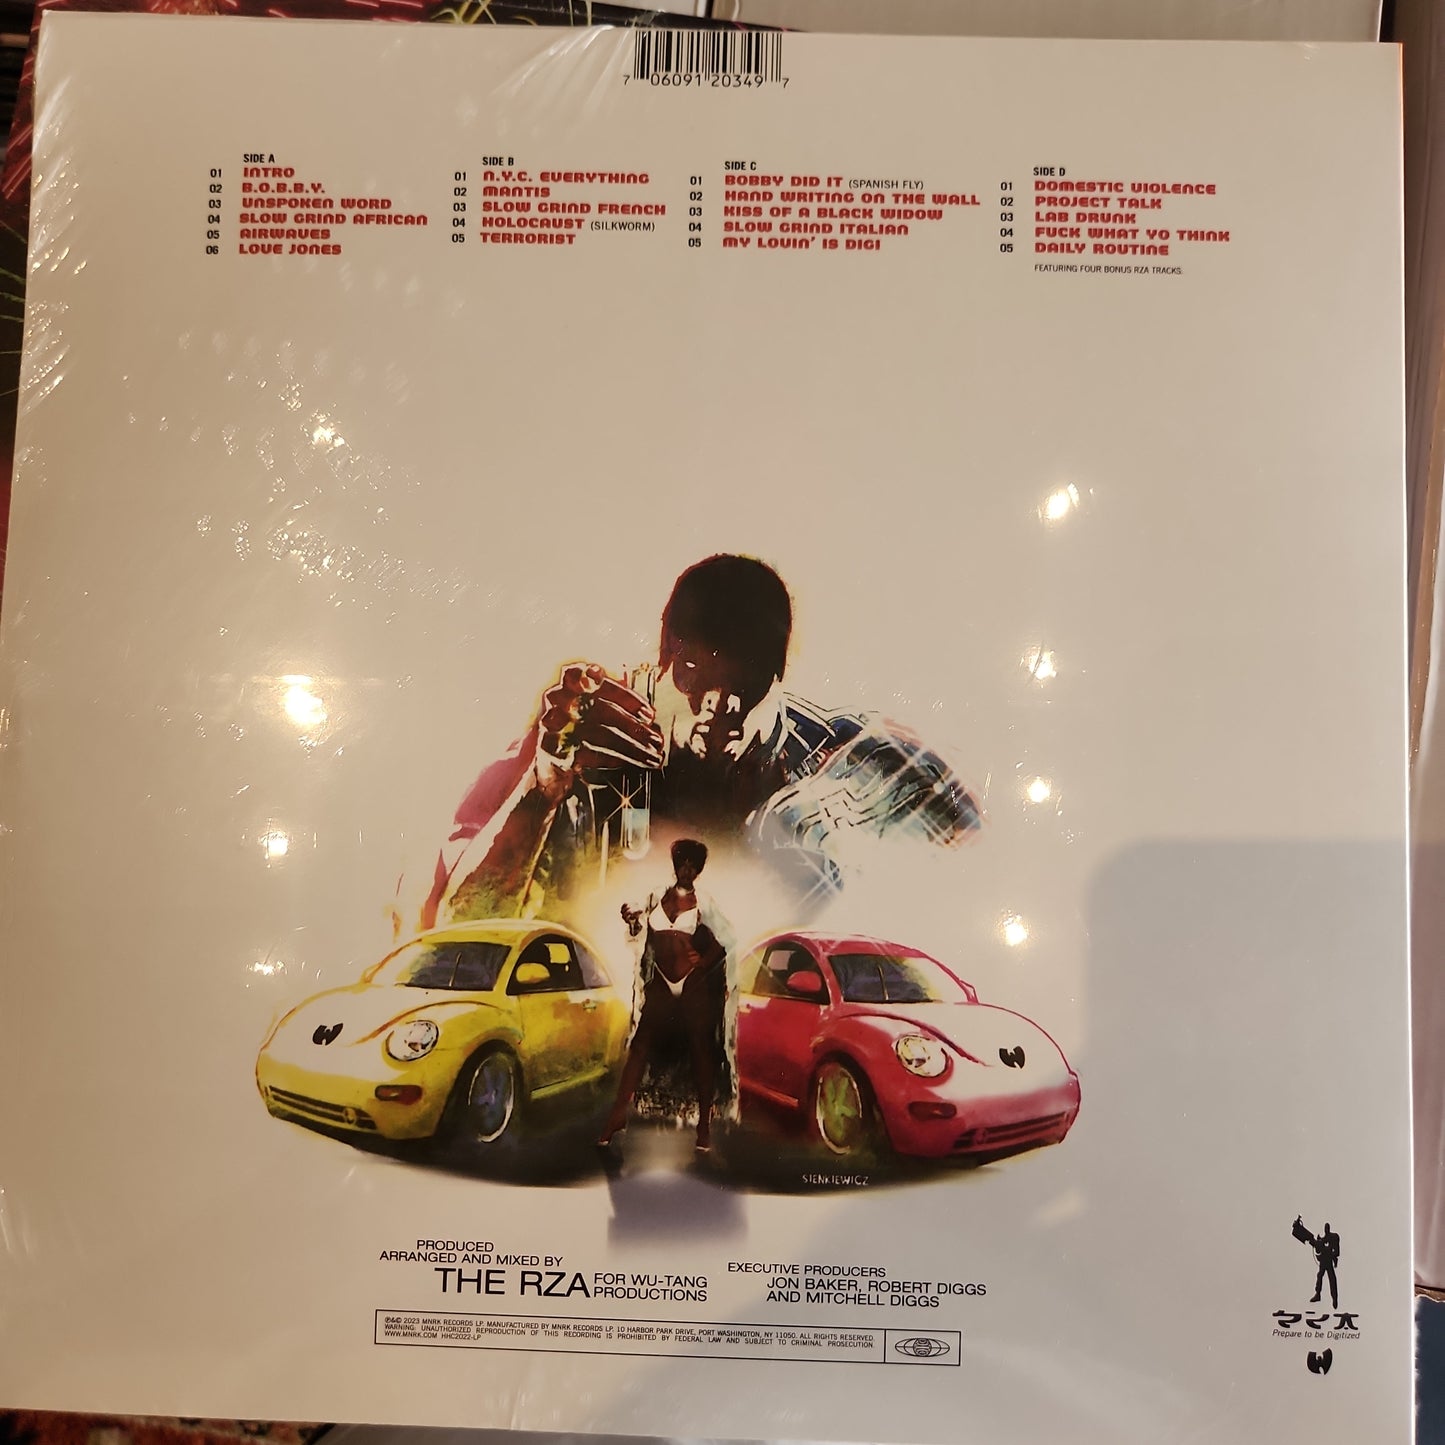 RZA as Bobby Digital - Bobby Digital in Stereo - Limited RSD Vinyl LP